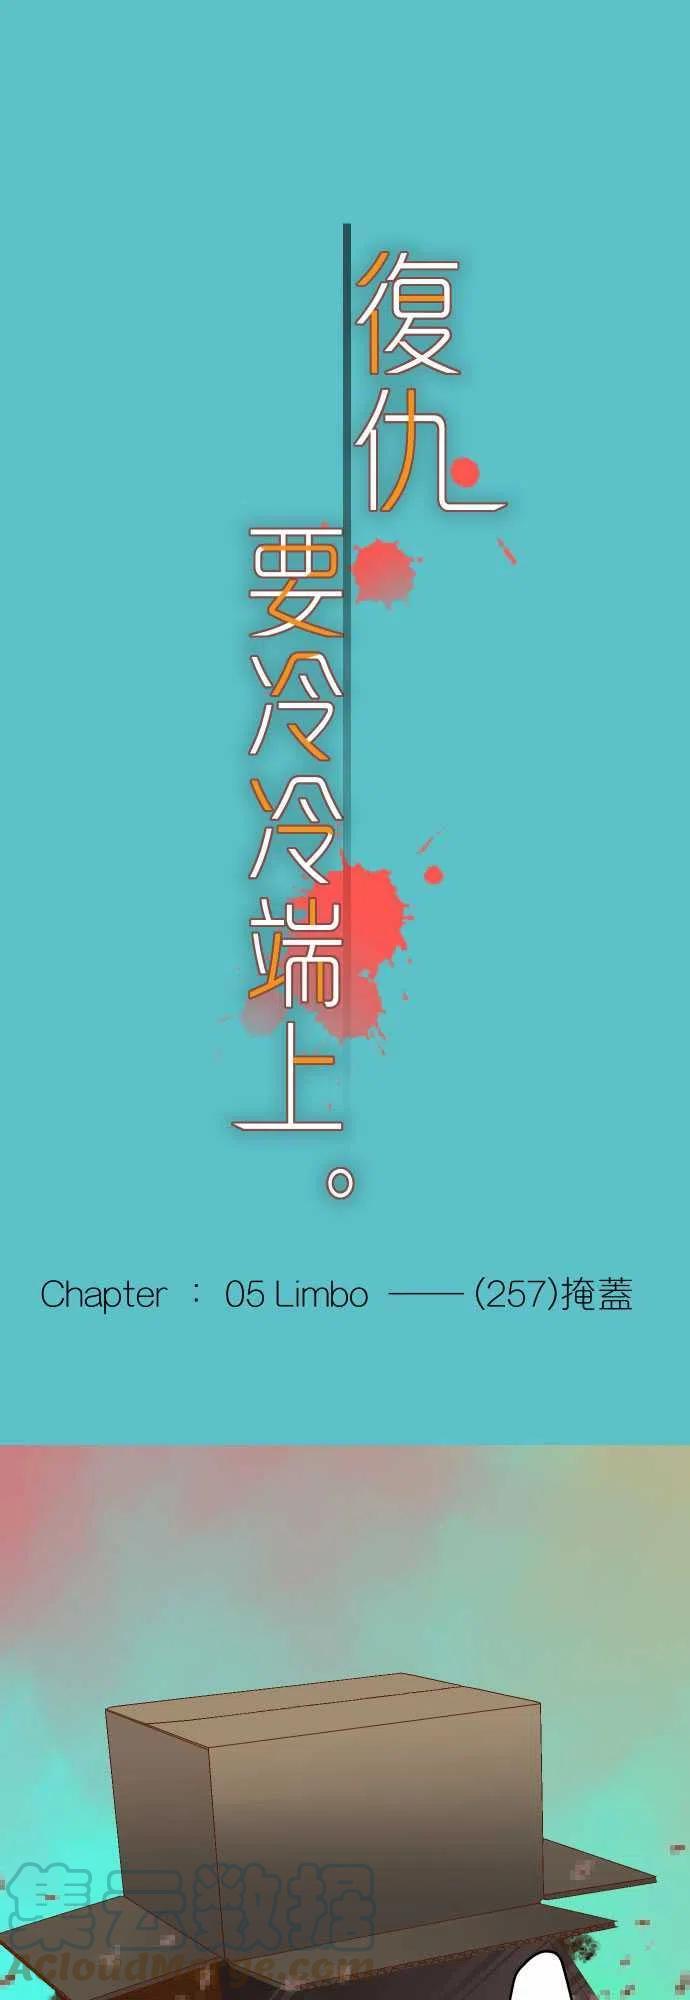 第五章 Limbo 257 掩盖0